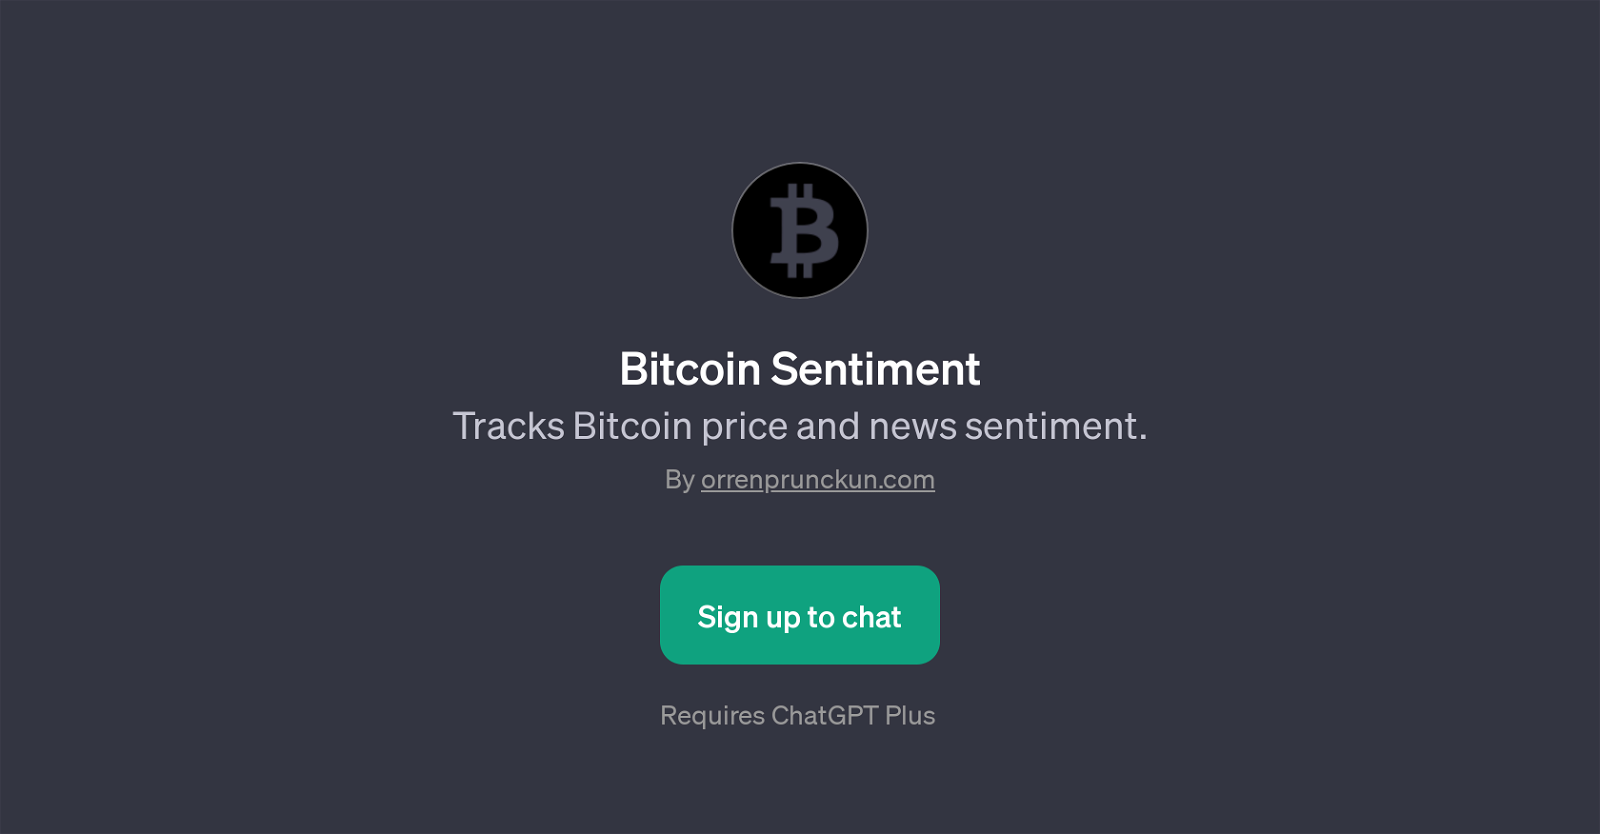 Bitcoin Sentiment website